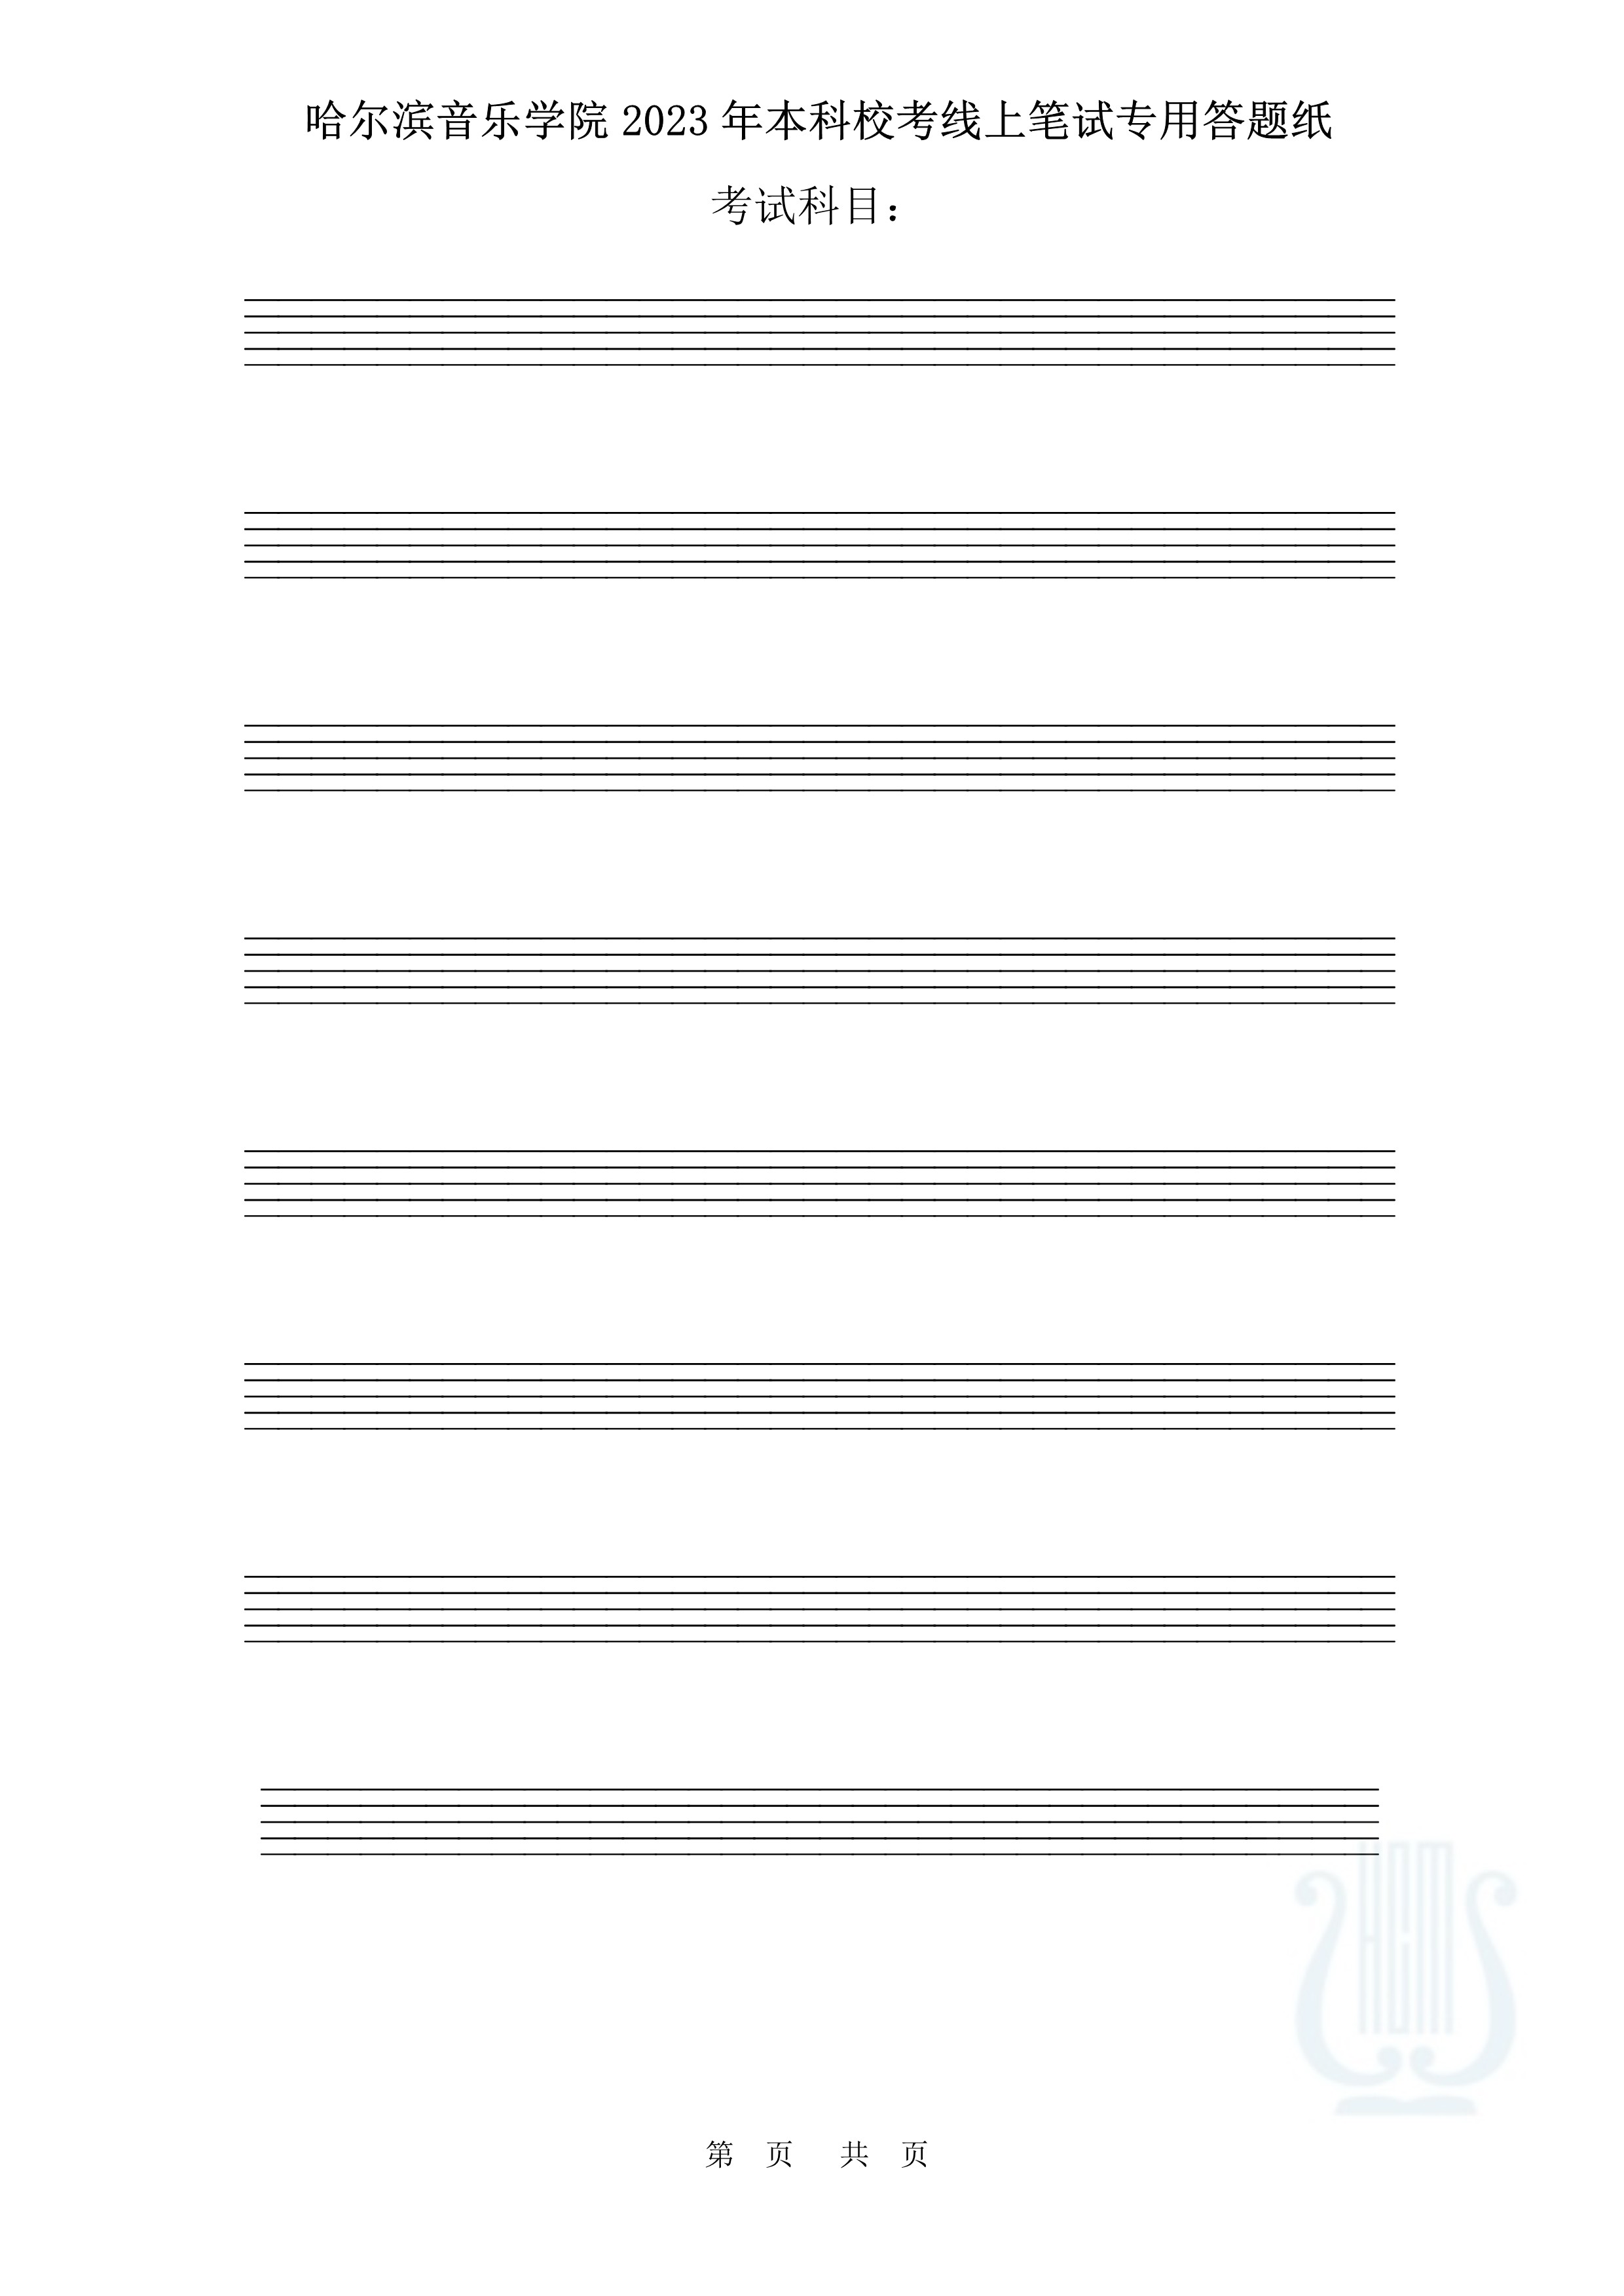 哈尔滨音乐学院2023年本科校考线上笔试答题纸（作曲与作曲技术理论）_5.jpg